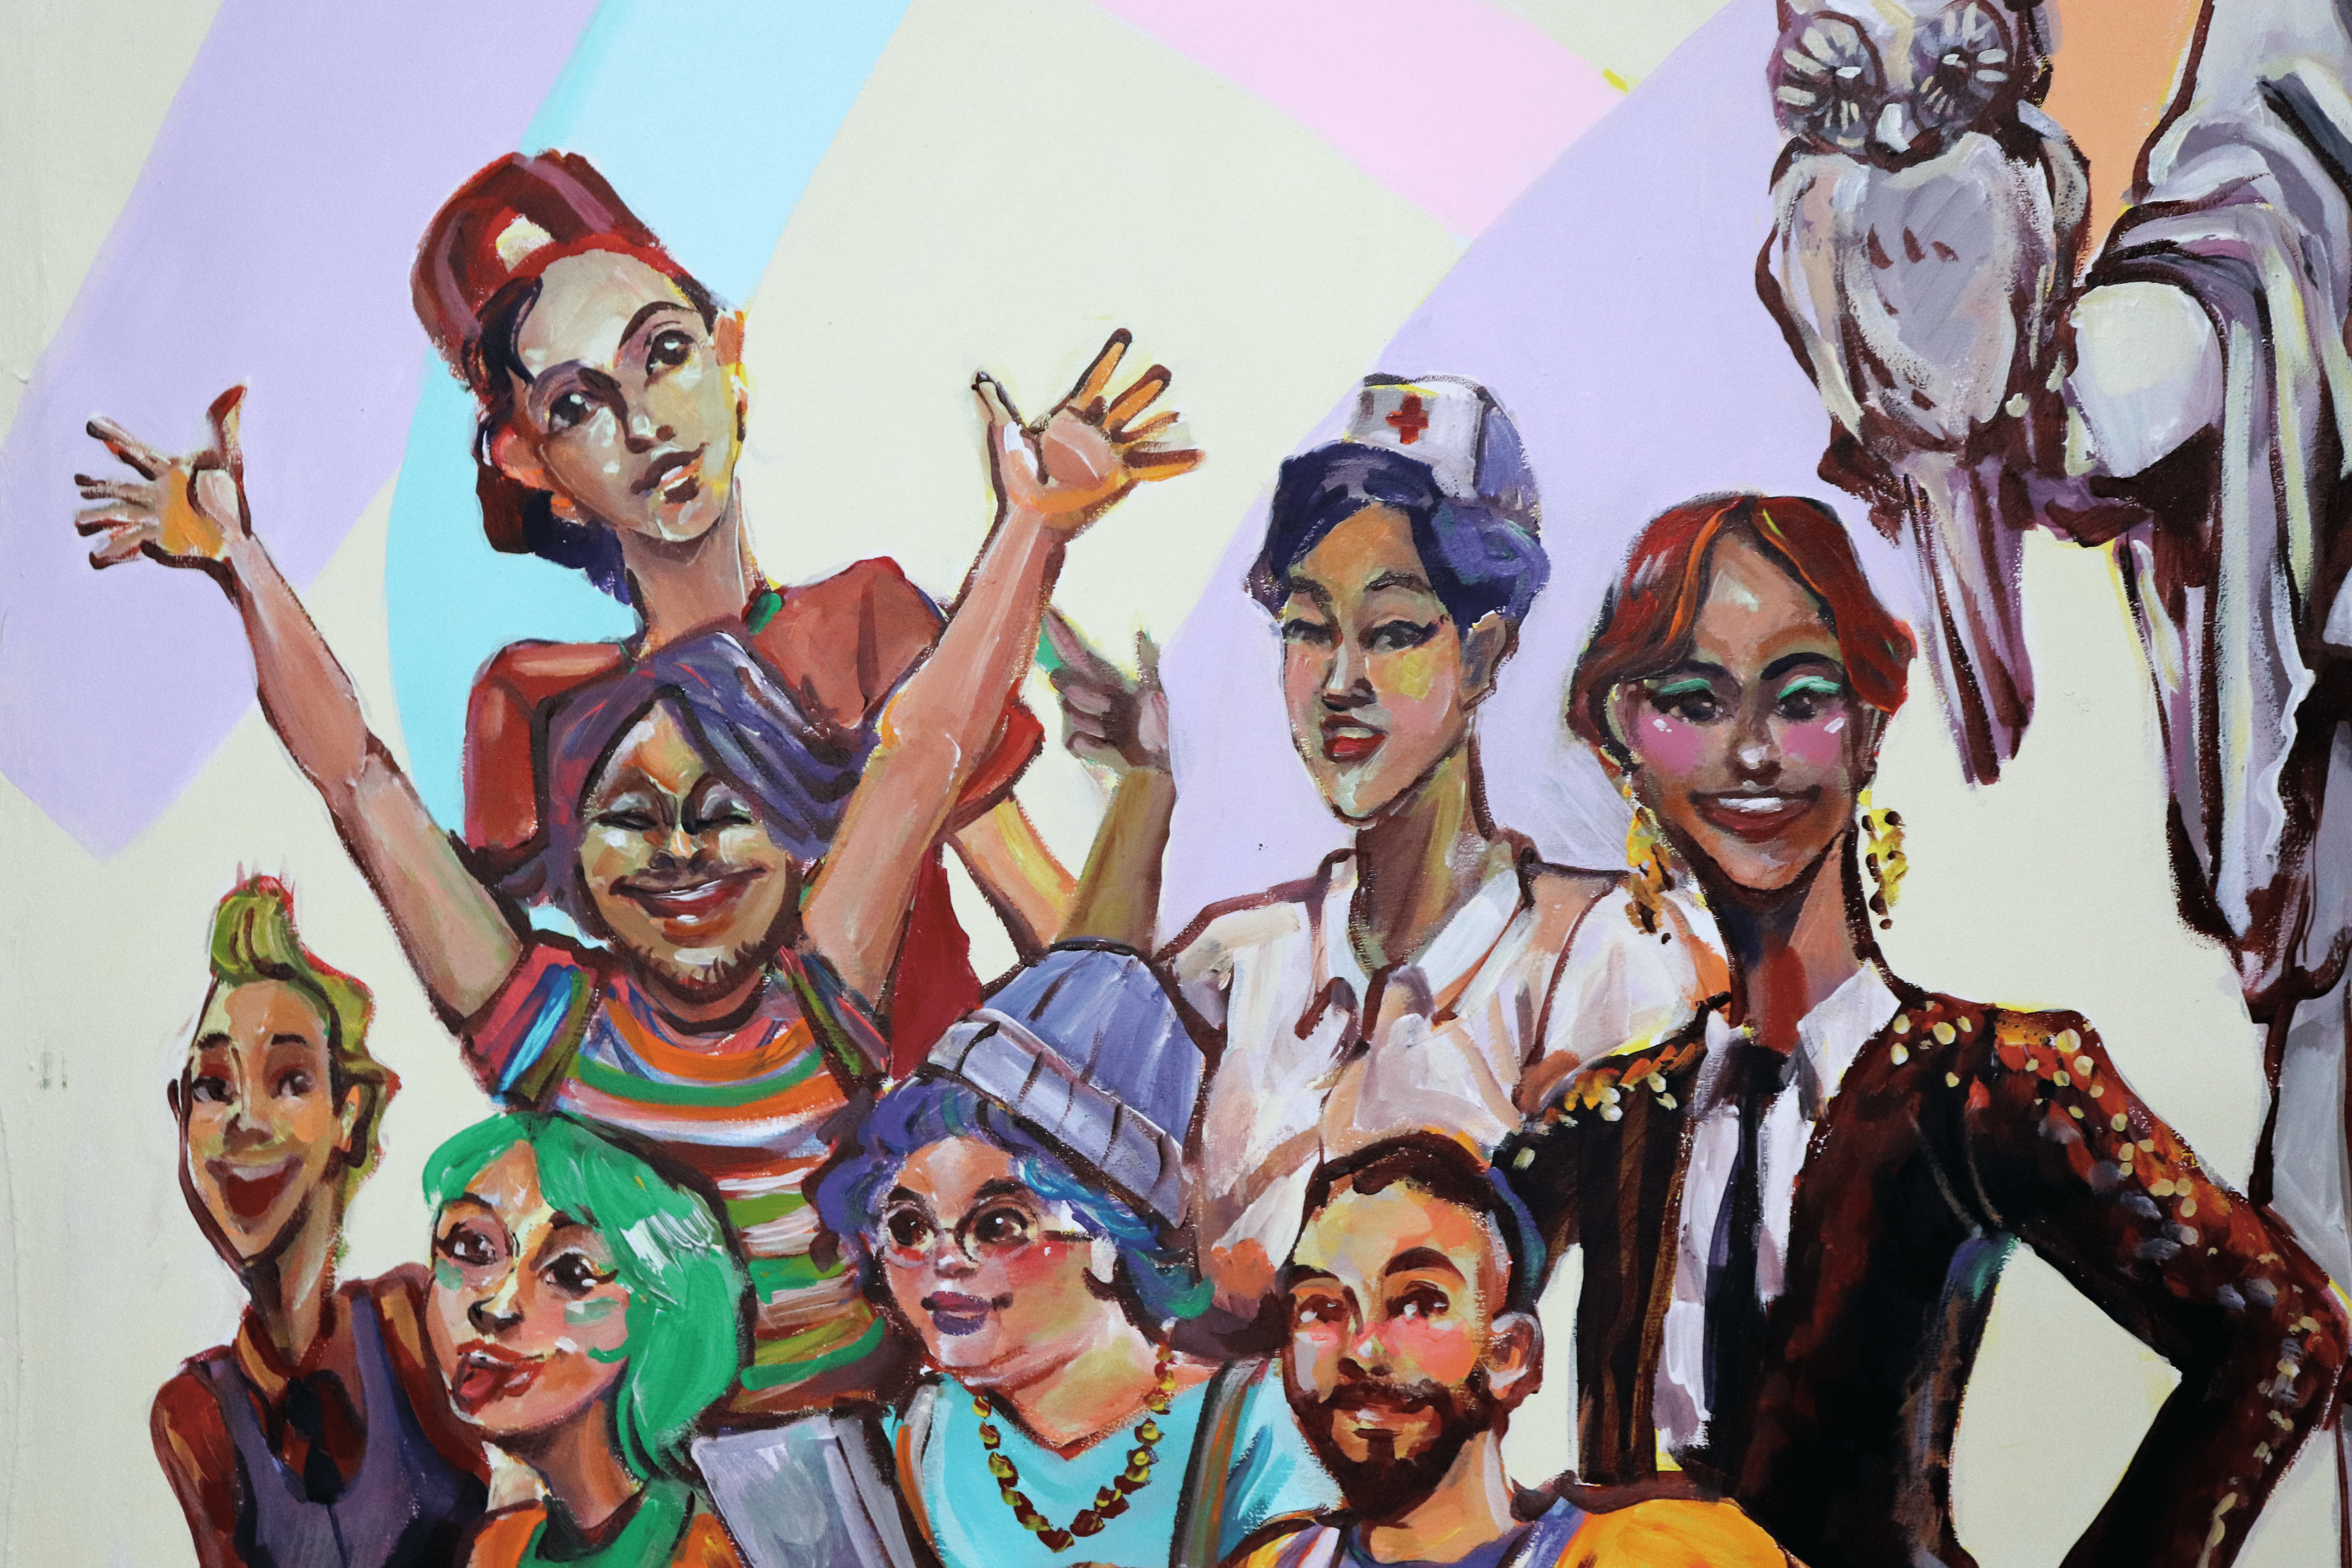 La pintura en acrílico, que mide 2.50 metro de alto x 1.70 de ancho, muestra a la Minerva al centro del cuadro y, los diferentes personajes que están a su alrededor, representan a personas de la diversidad sexual como estudiantes de la U, en forma de caricaturas.